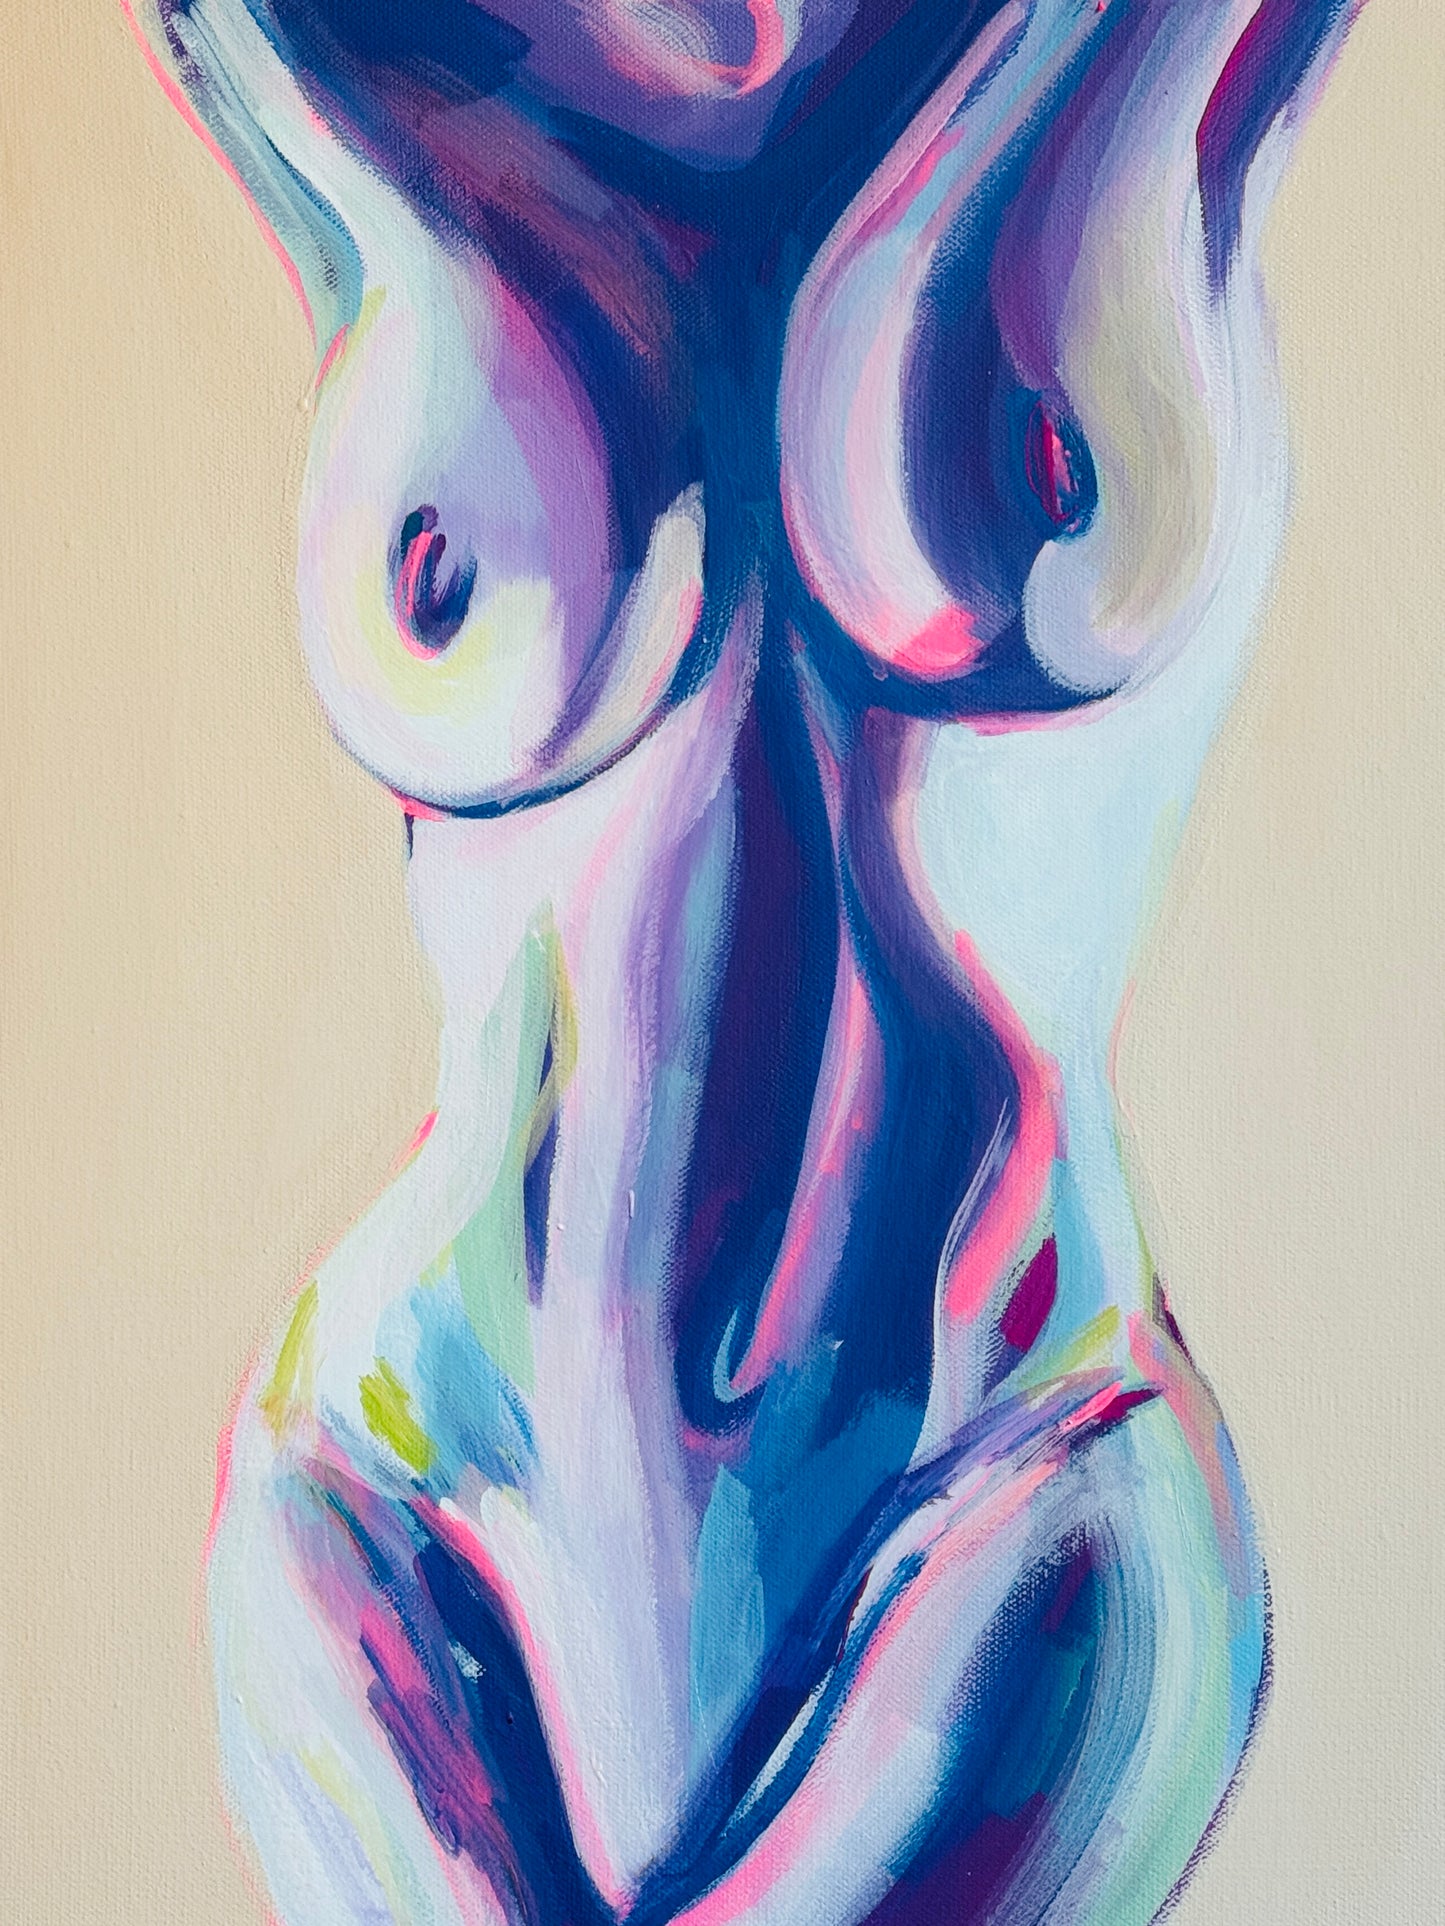 BODY Nude Print 13x19